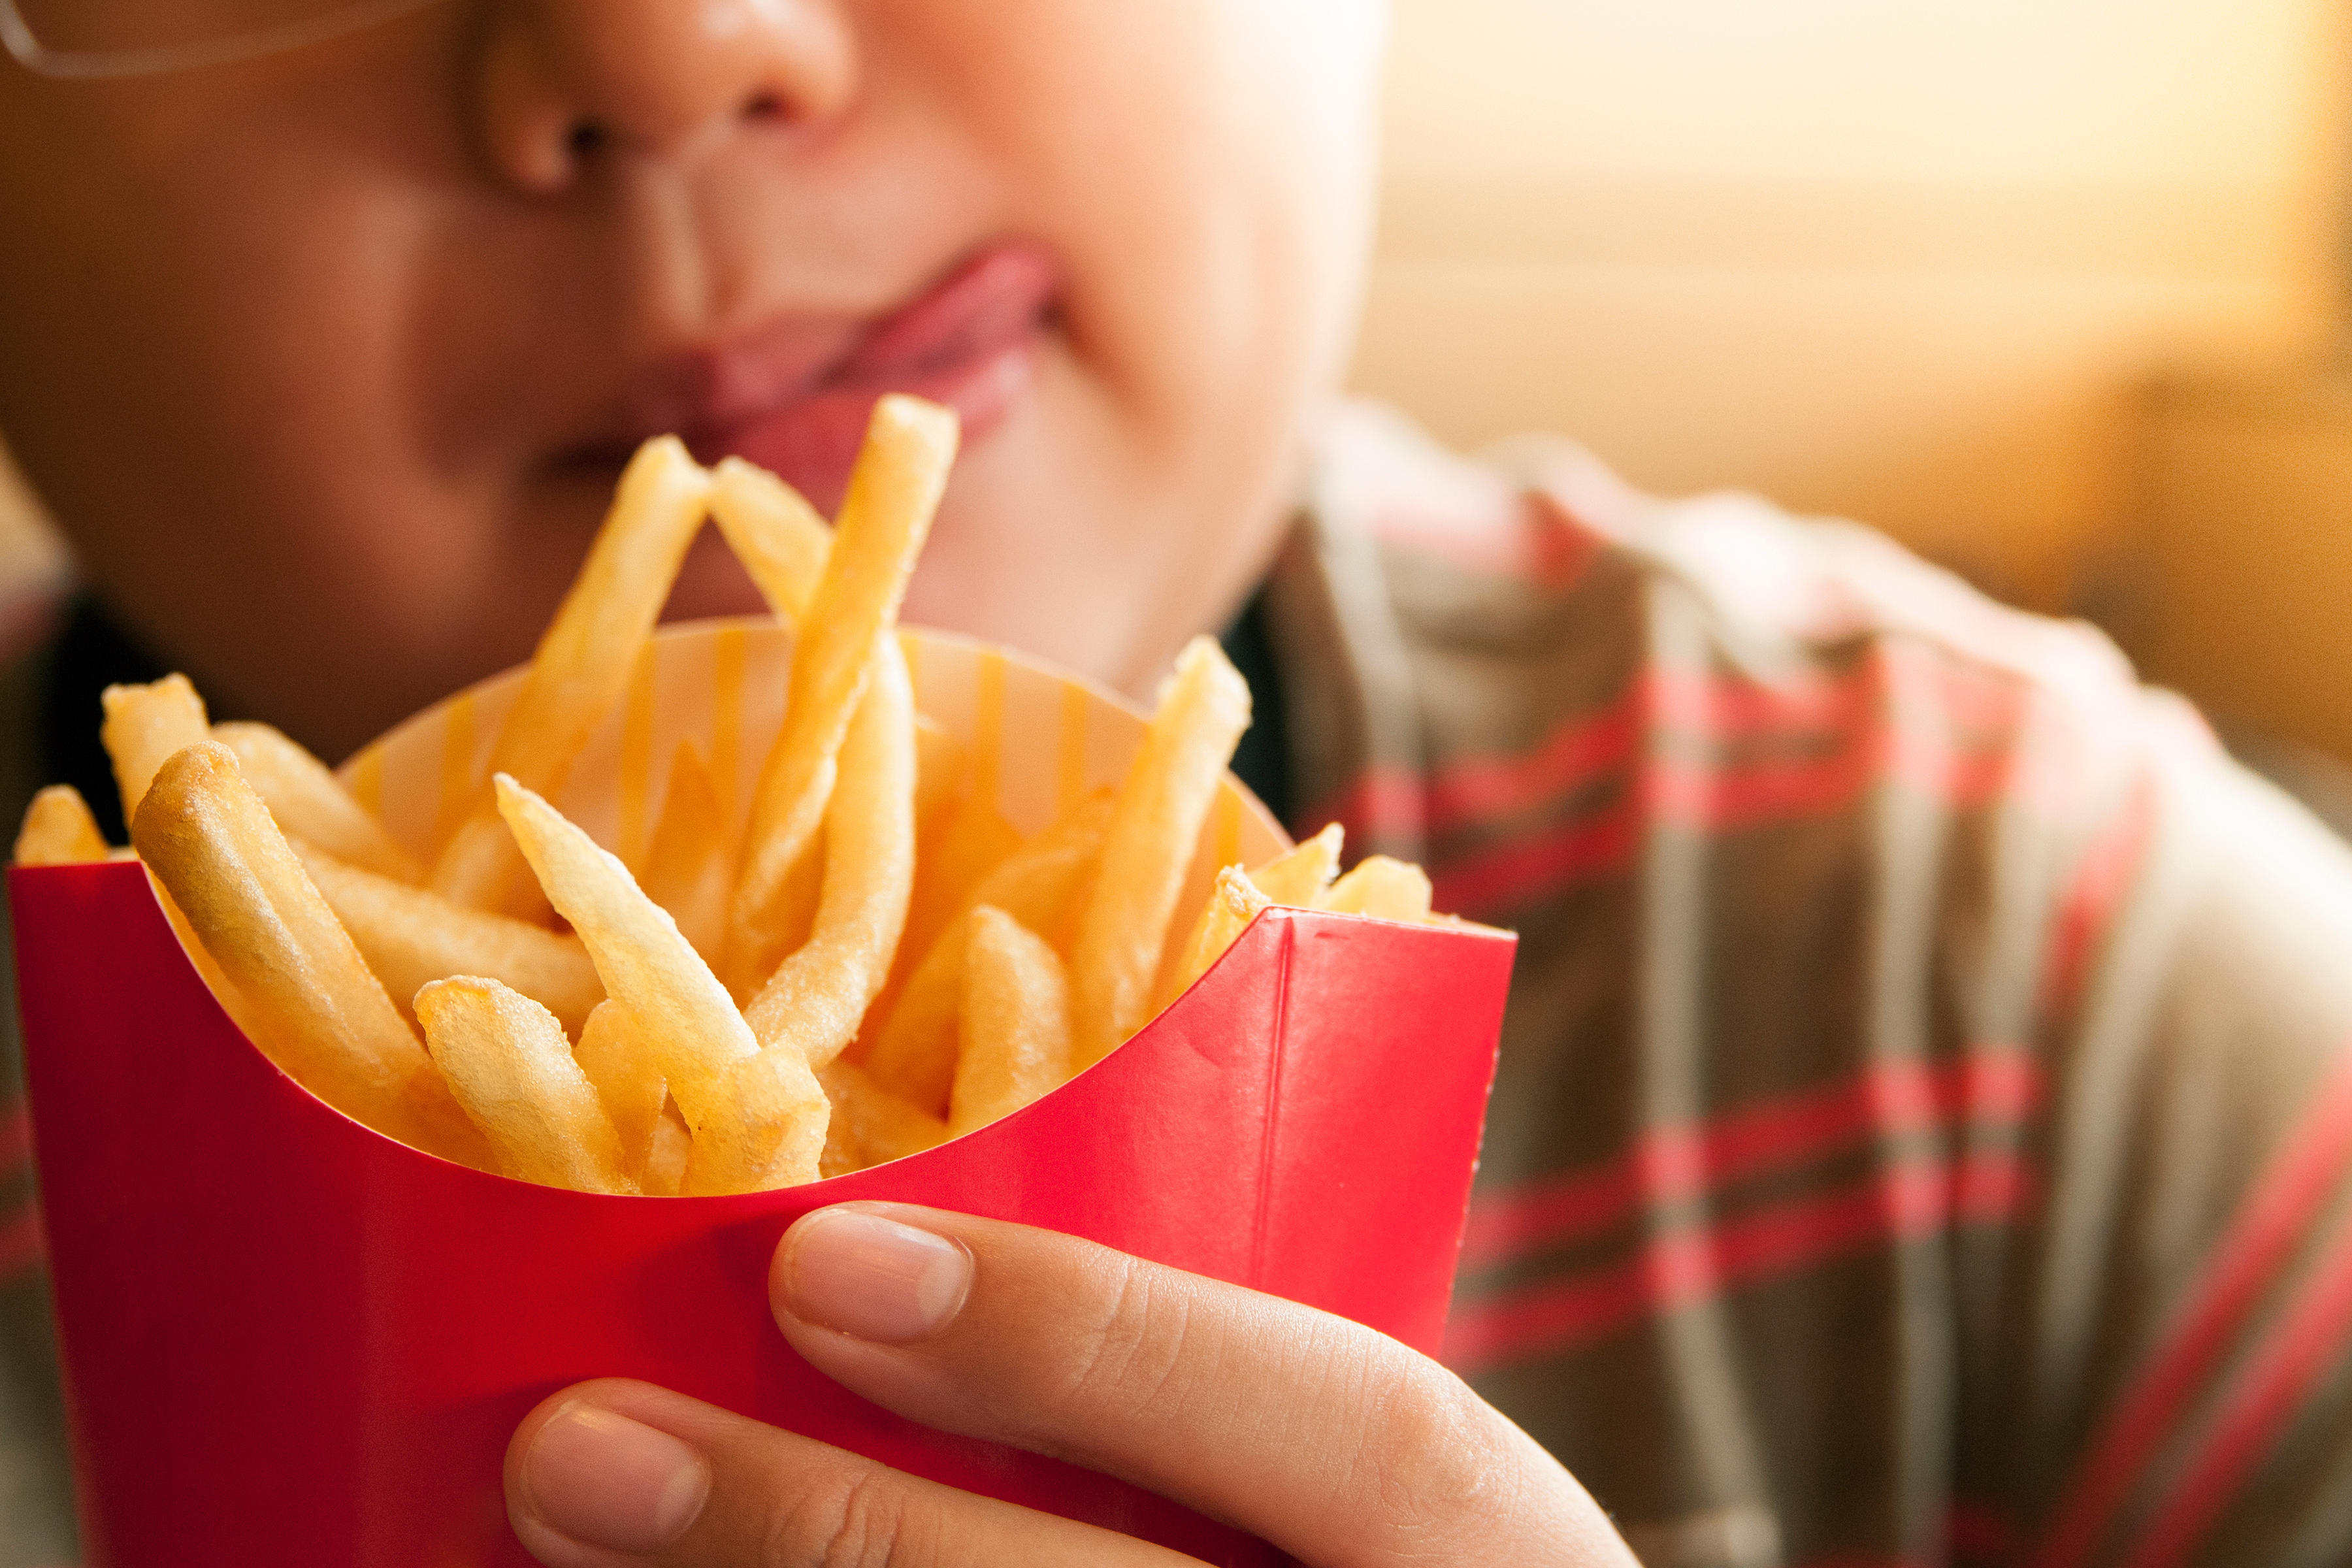 Ce trebuie să faci atunci când copilul tău vrea produse tip fast food? Interdicția nu e o soluție